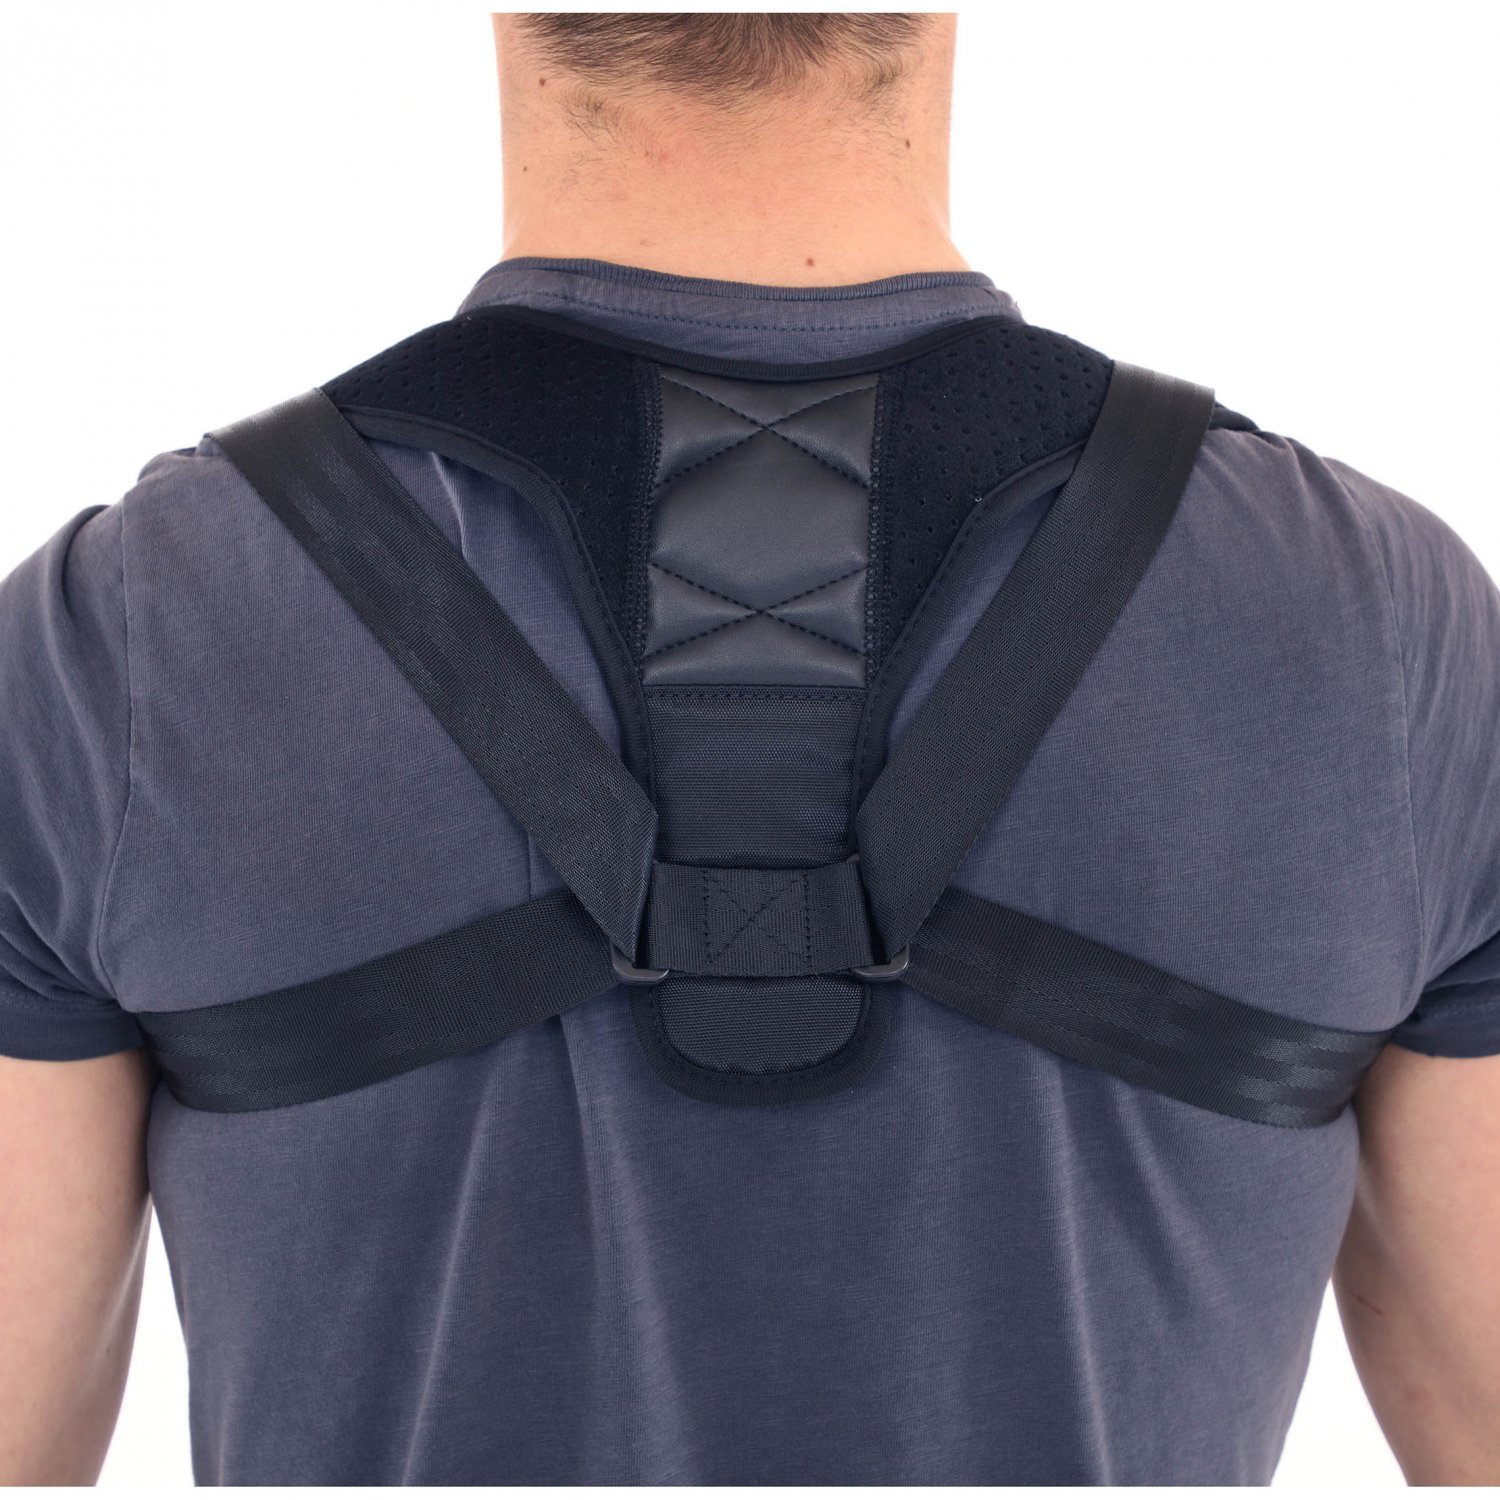 Posture Corrector Back Brace Neck Shoulder Back Support Brace Pain